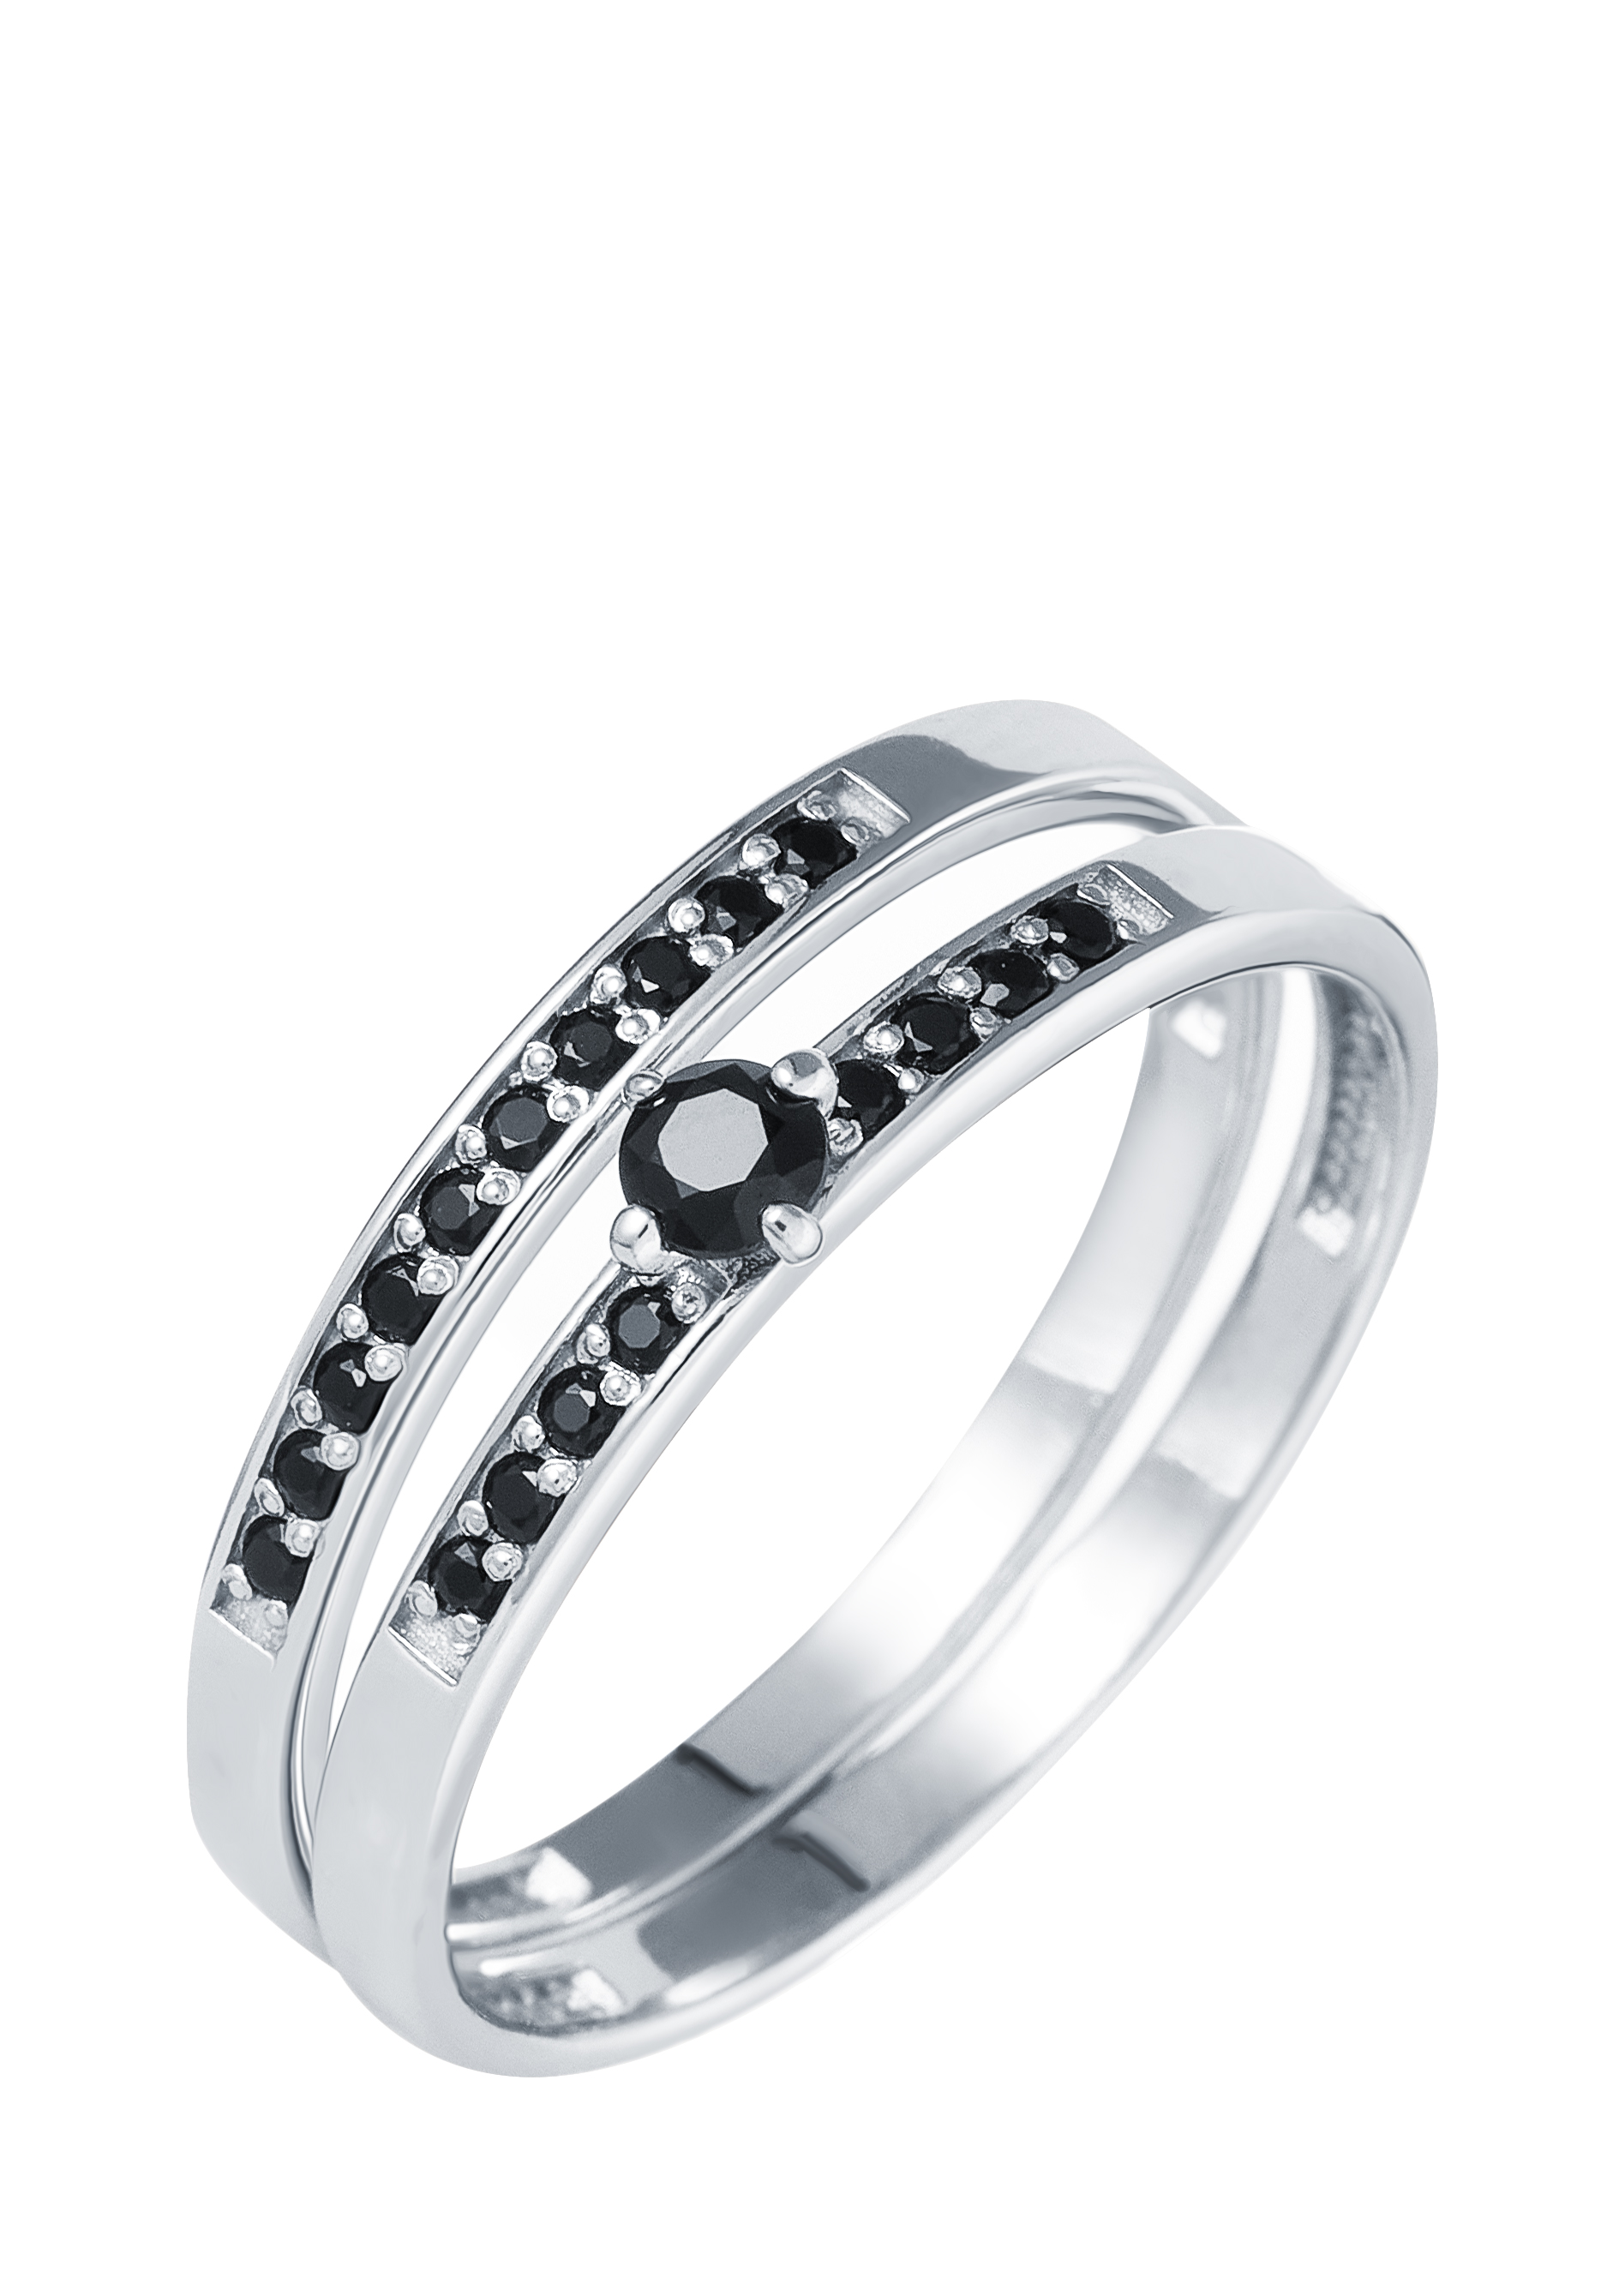 Кольцо серебряное 2 в 1 "Муза" Nouvelle, размер 18, цвет черный кластер - фото 2